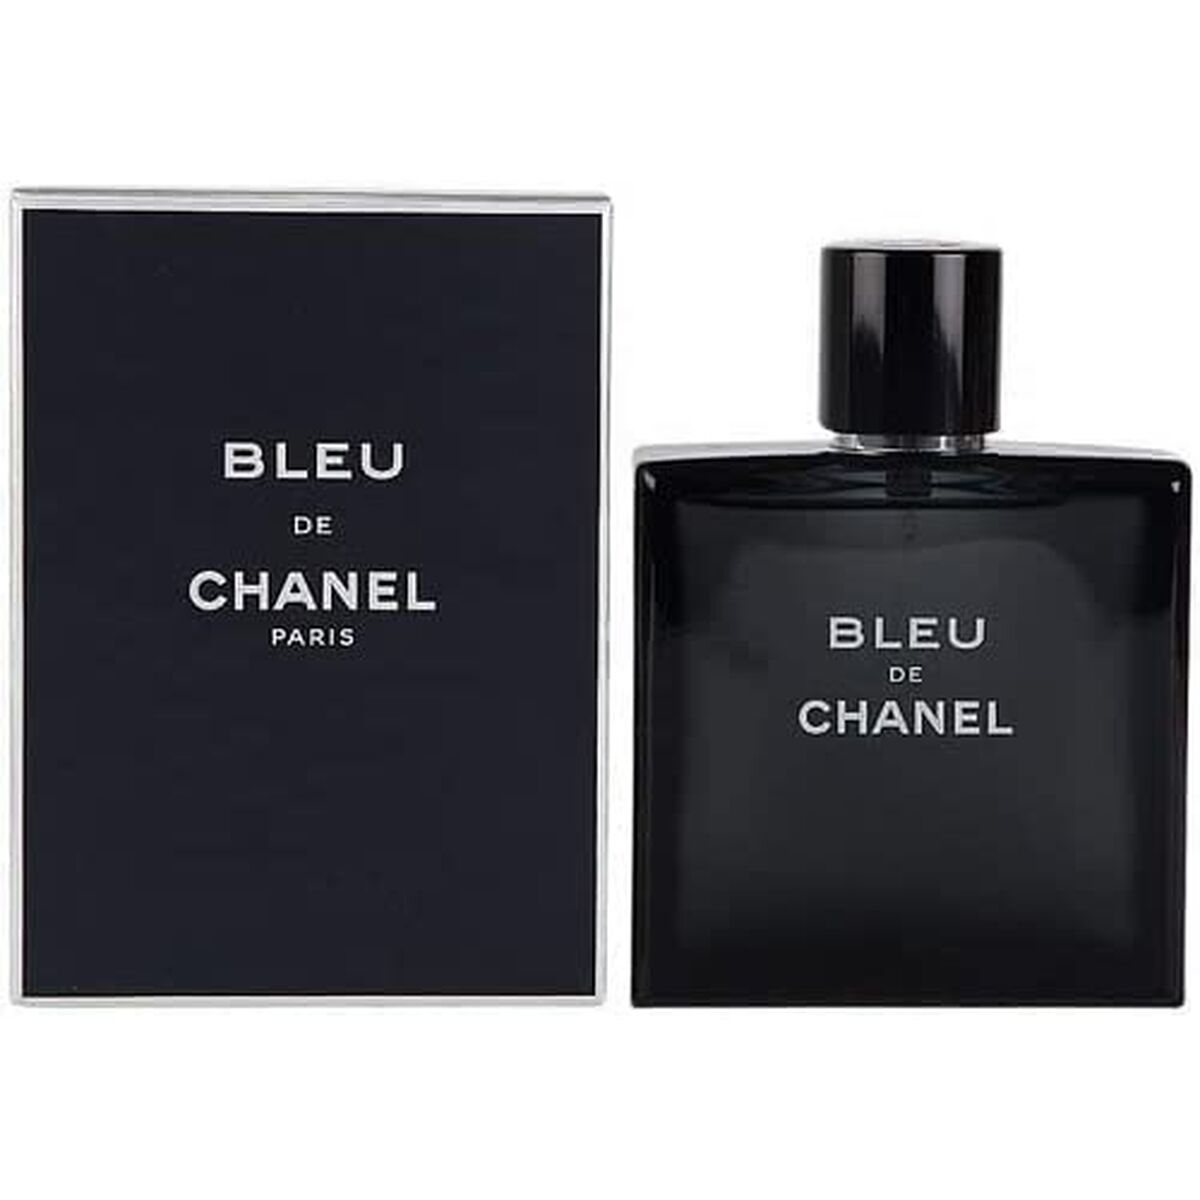 Kaufe Chanel EDP Bleu de Chanel 100 ml - Herren bei AWK Flagship um € 188.00